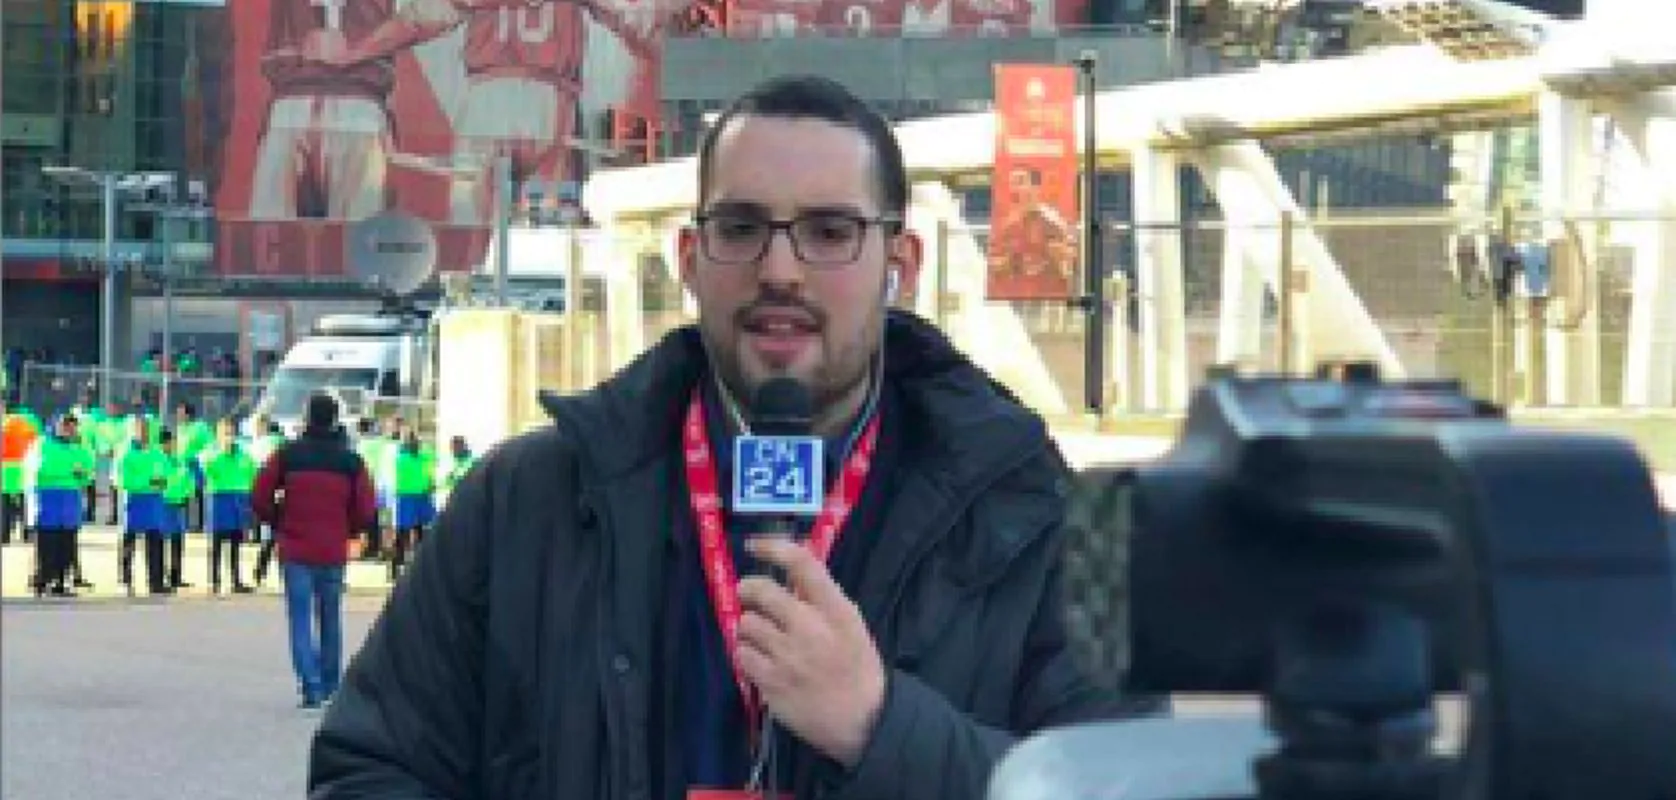 Marco Lombardi, il giornalista insultato a Milano